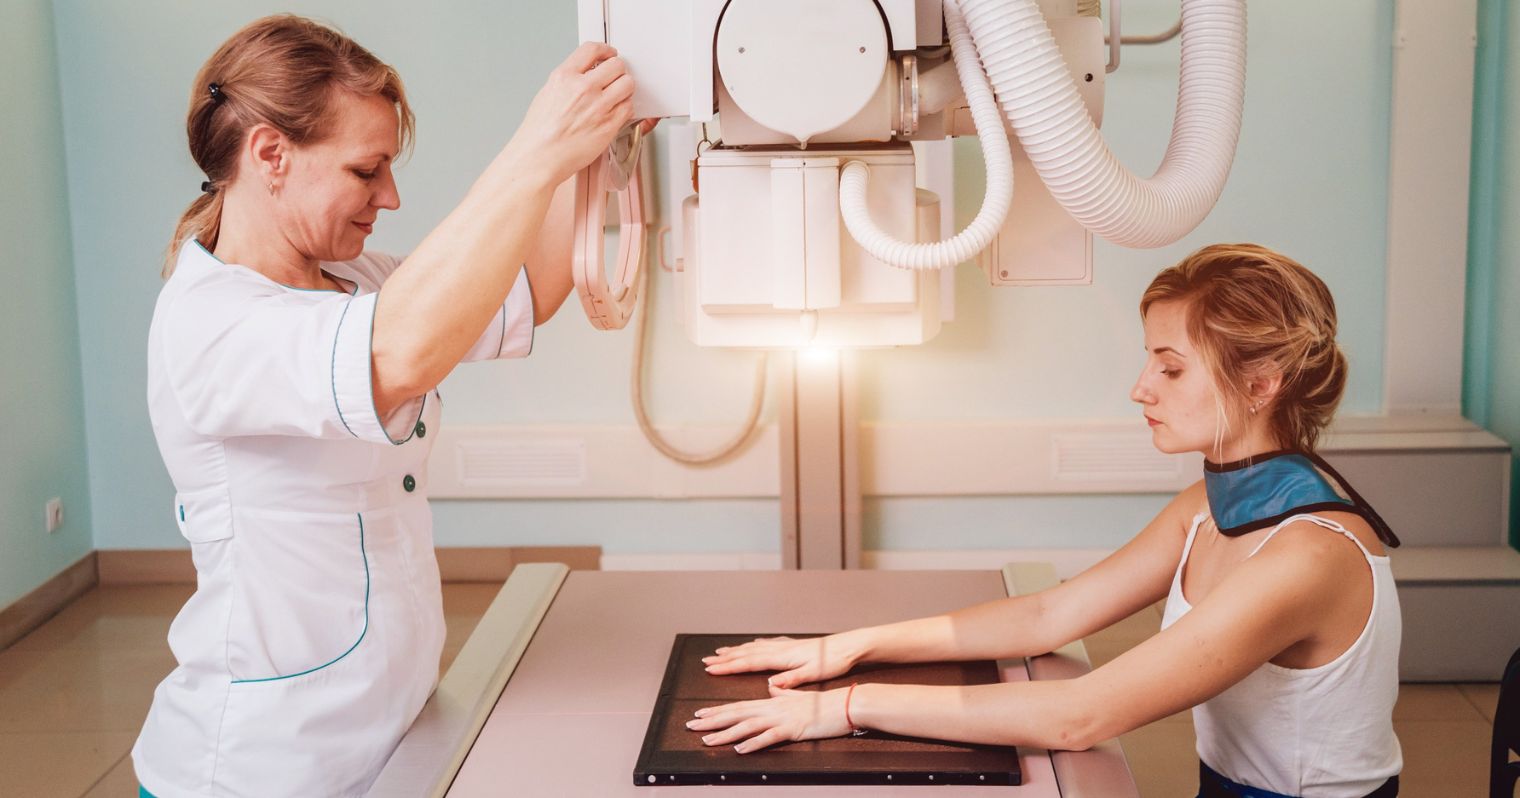 A képen egy radiográfiai szakasszisztens és a páciens látható, röntgen felvétel előkészítése közben.